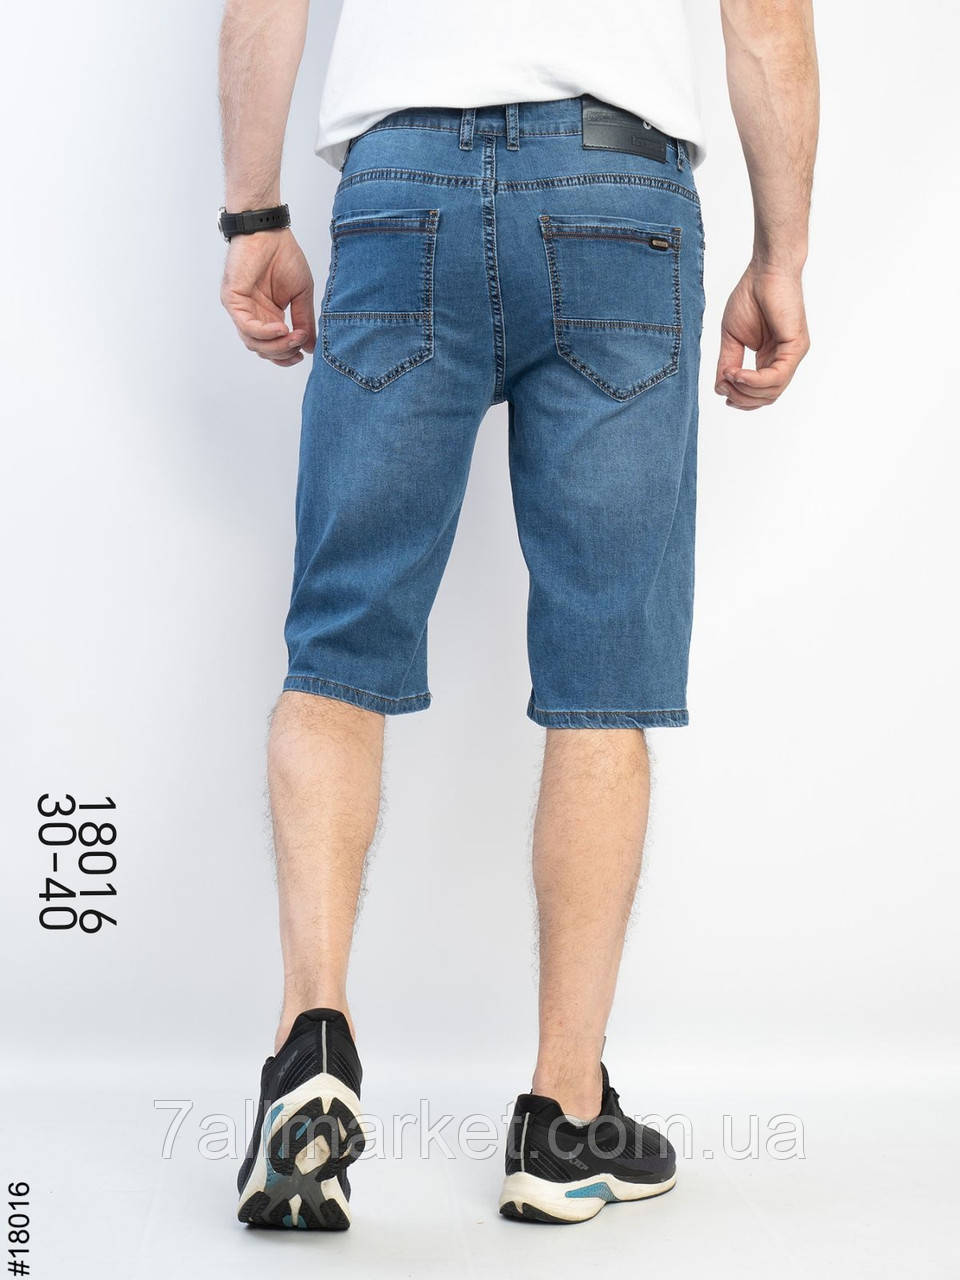 Шорти чоловічі джинсові розміри 30-40 "ROOS" купити недорого від прямого постачальника